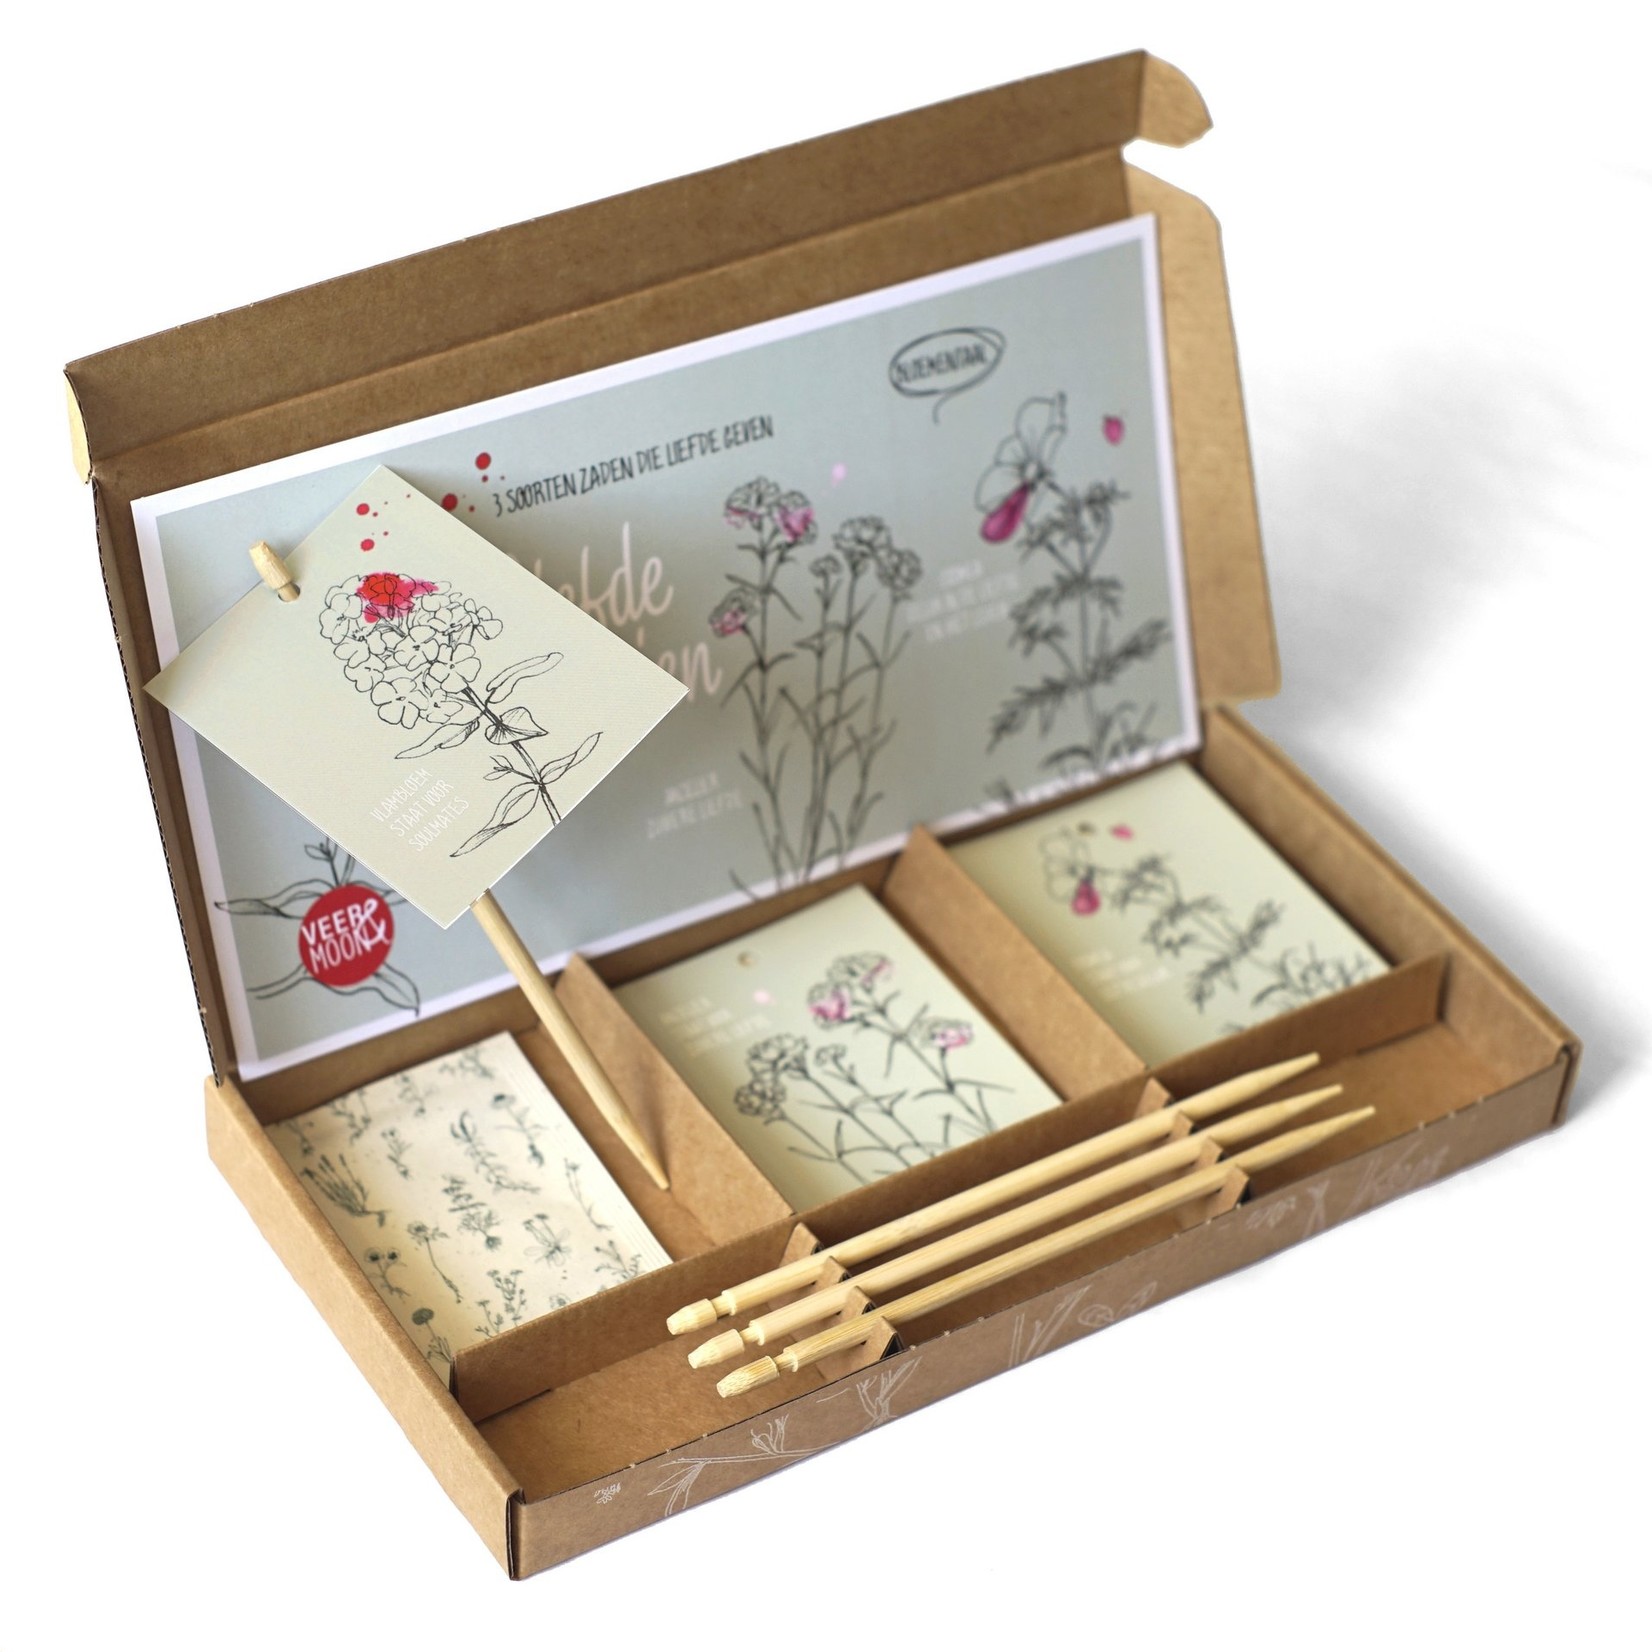 Veer&Moon Gift box 'Liefde zaaien'